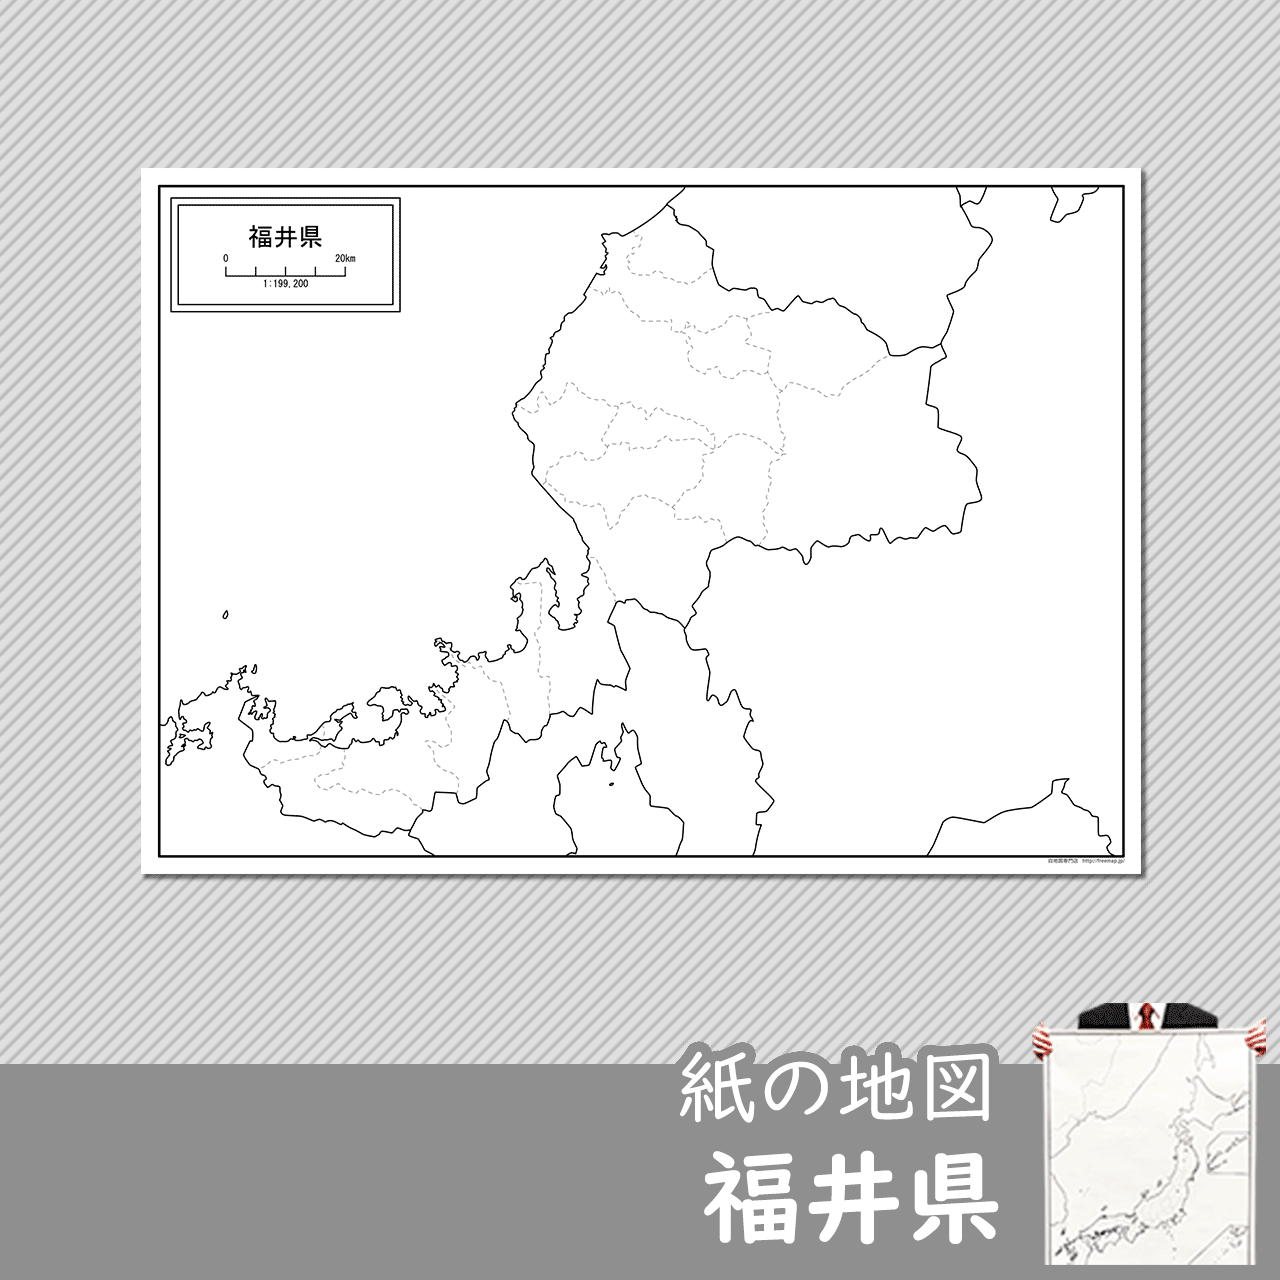 福井県の紙の白地図のサムネイル